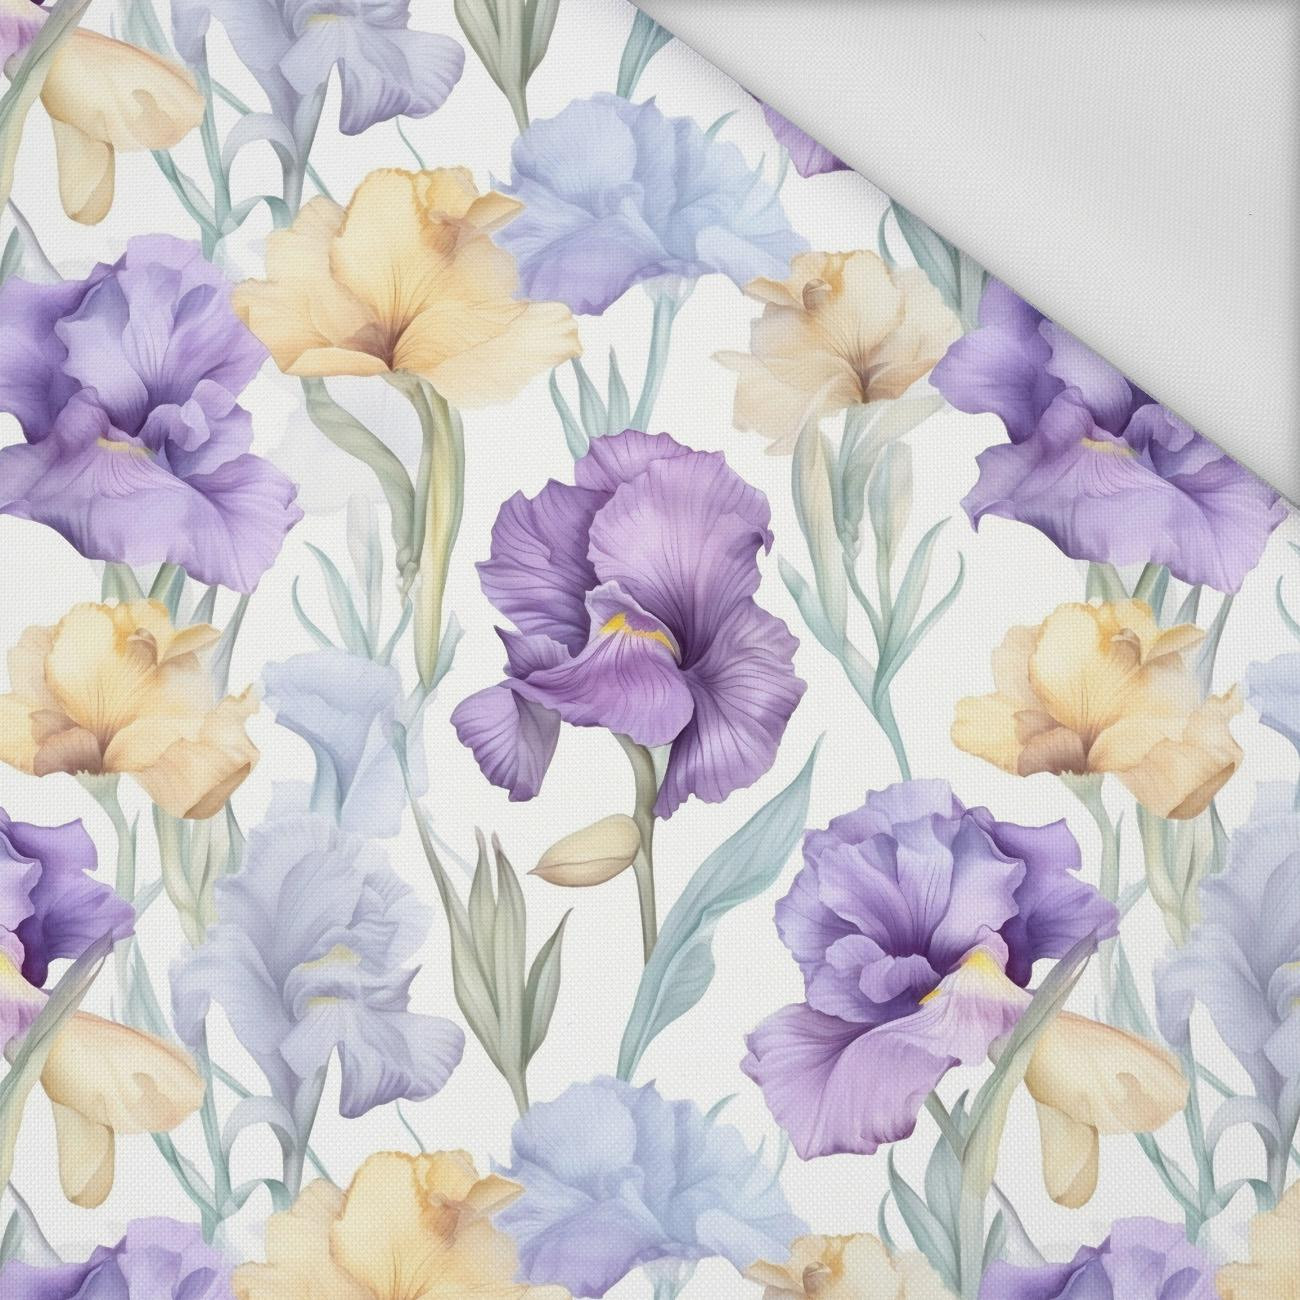 FLOWERS wz.11 - Waterproof woven fabric